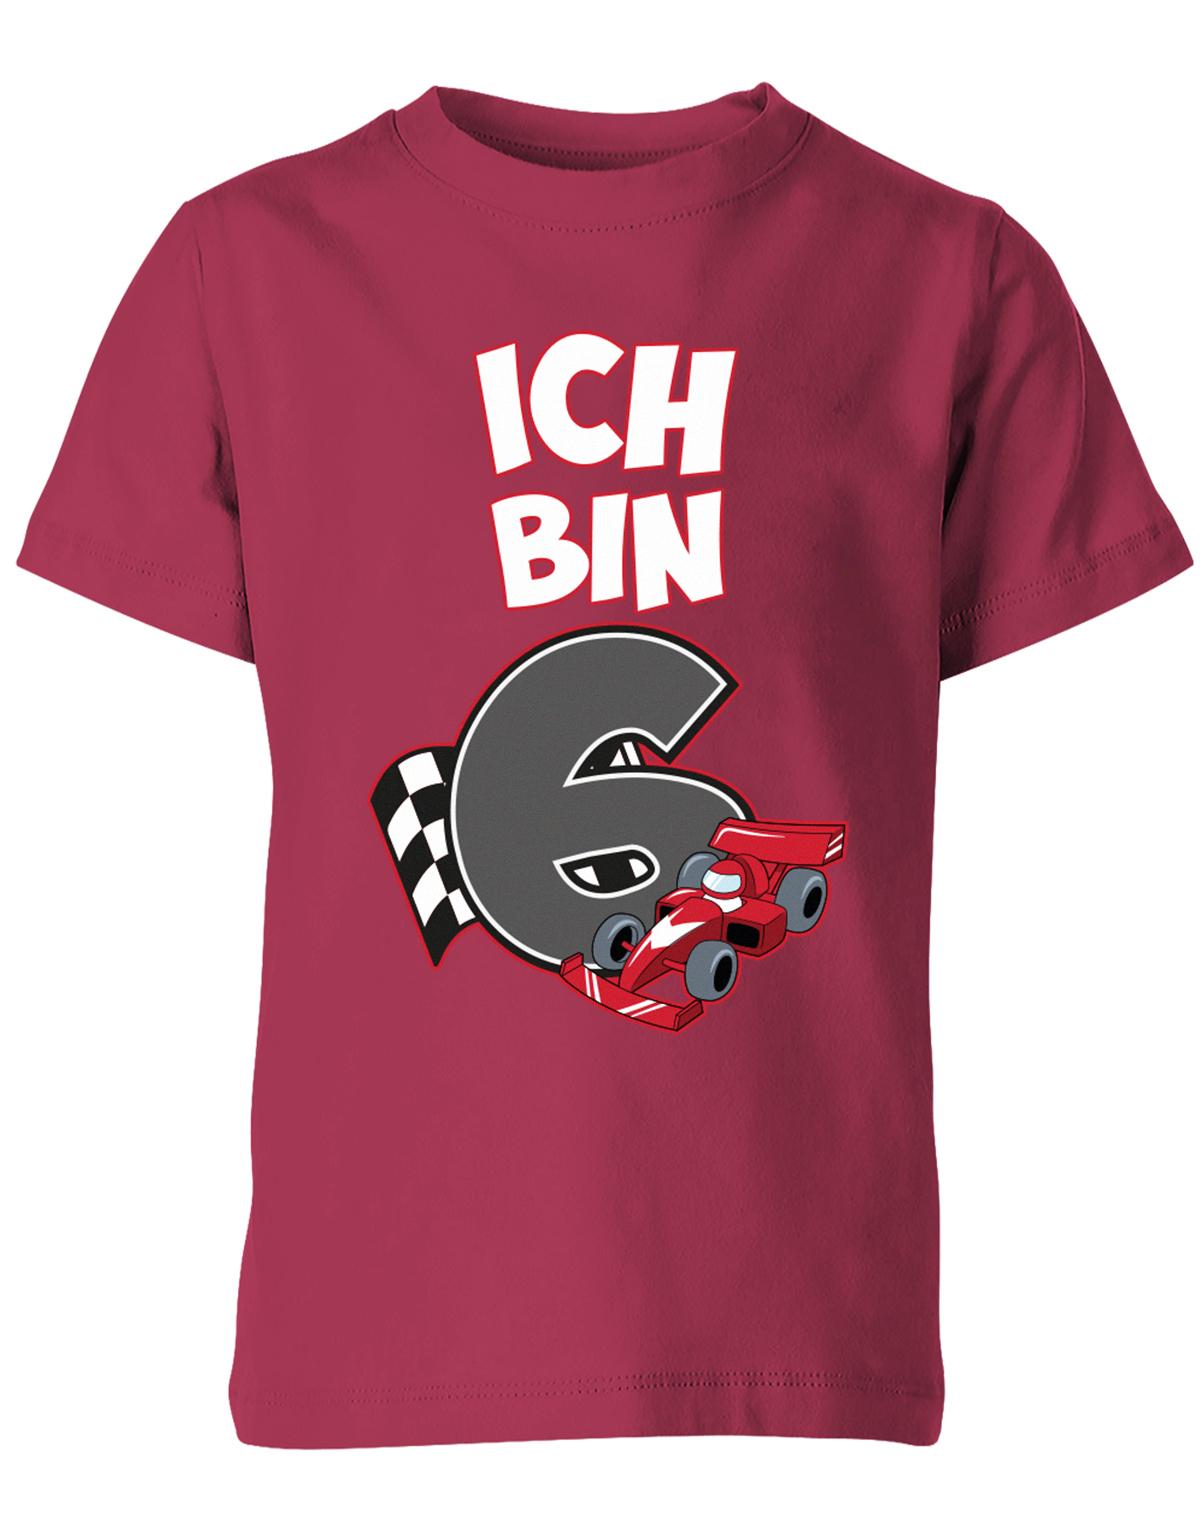 ich-bin-6-autorennen-rennwagen-geburtstag-rennfahrer-kinder-shirt-sorbet